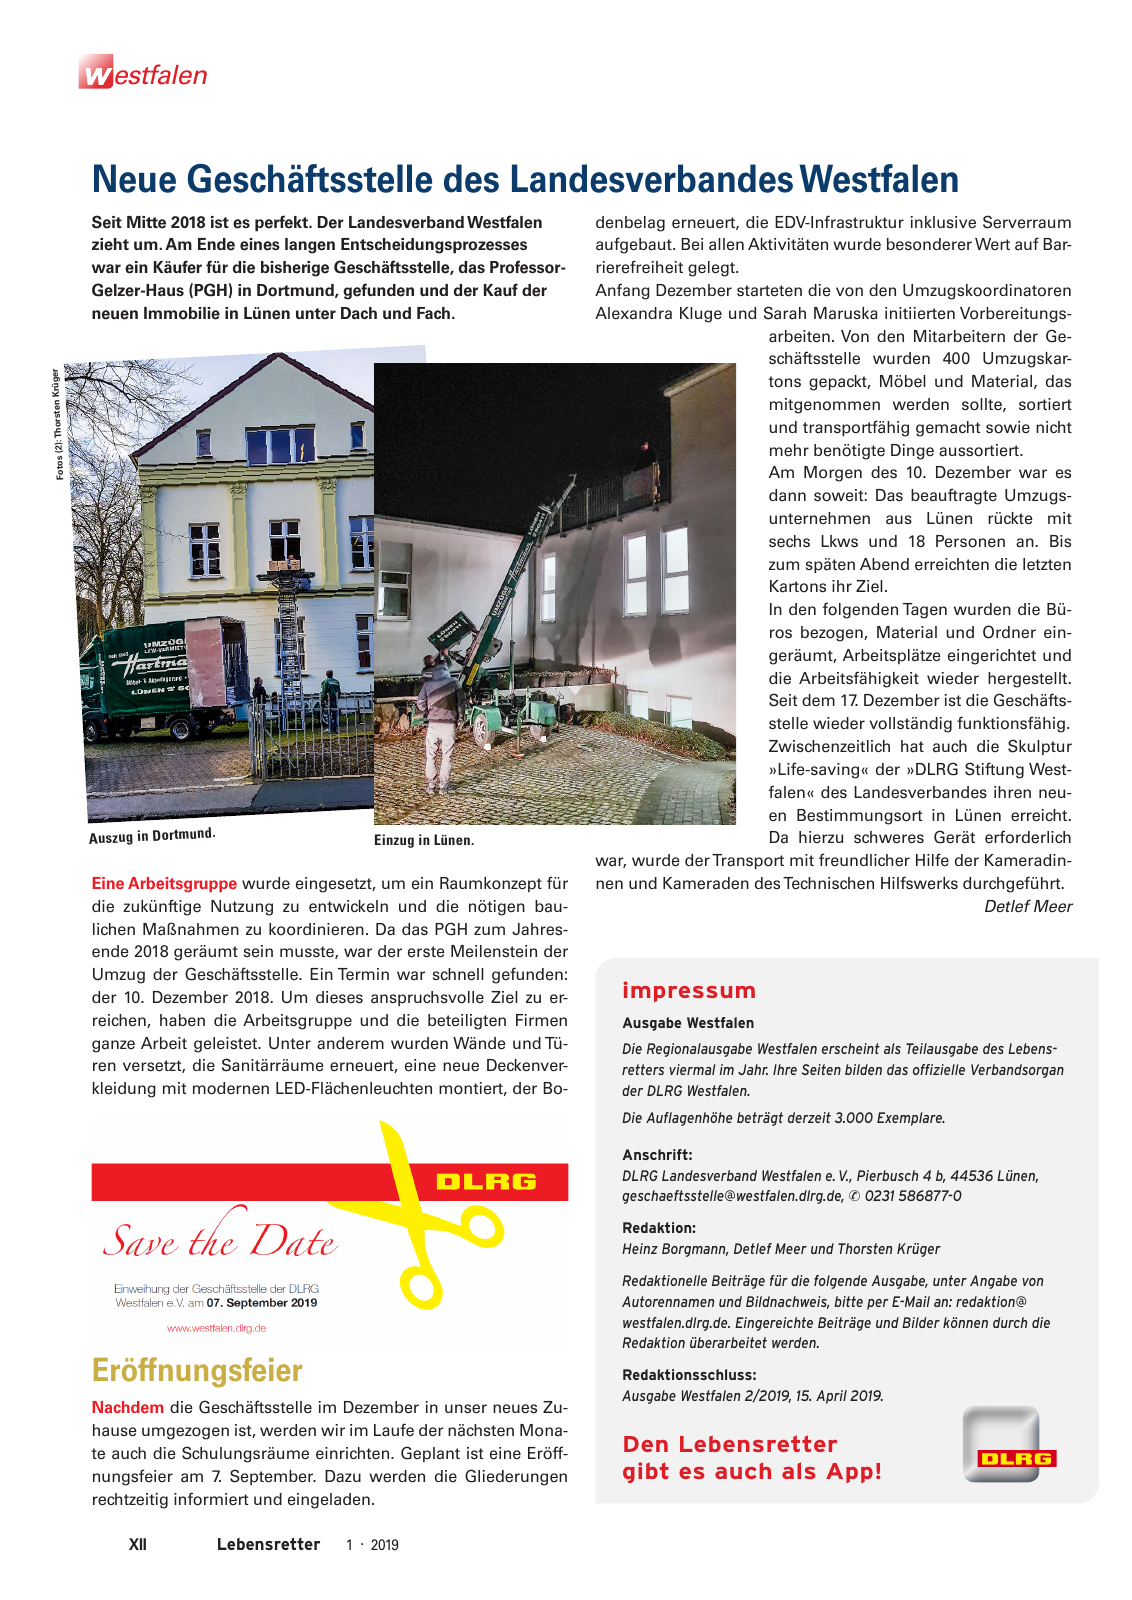 Vorschau Lebensretter 1/2019 –  Regionalausgabe Westfalen Seite 14